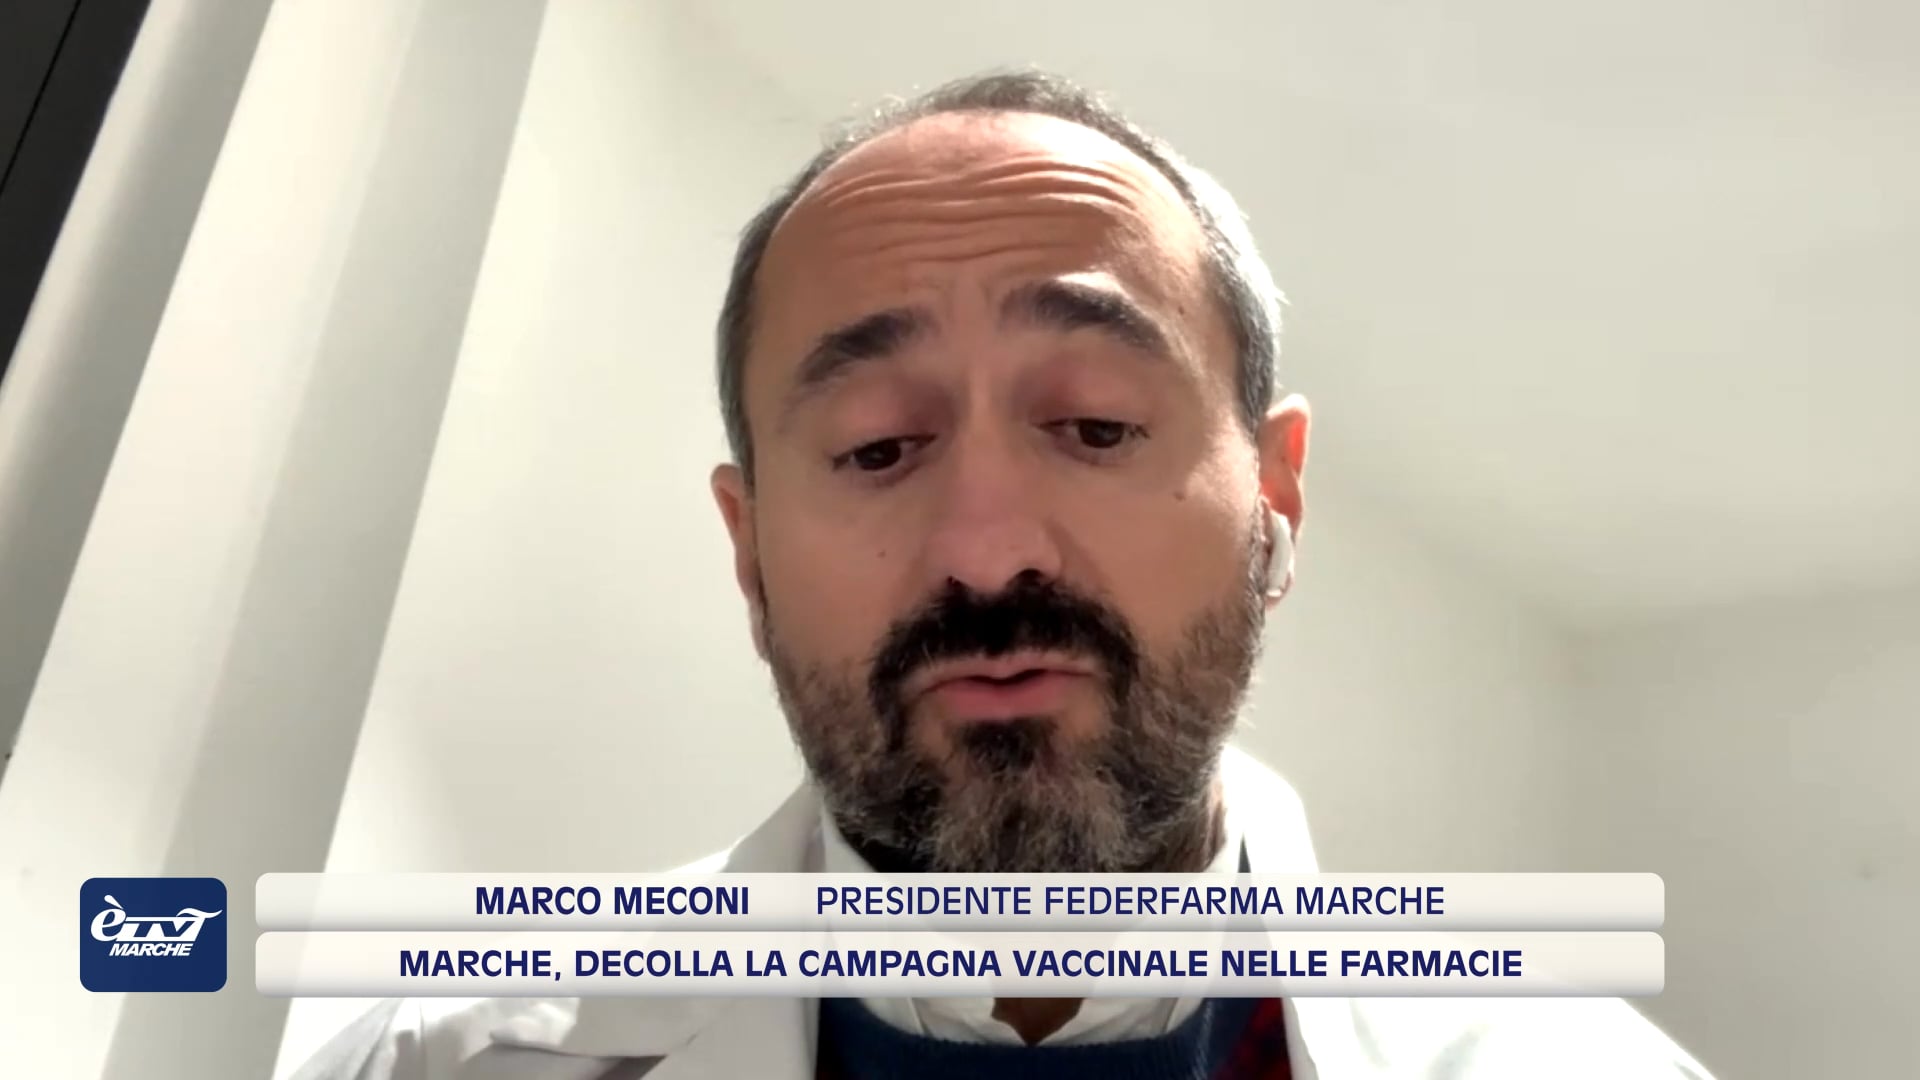 Marche, decolla la campagna vaccinale nelle farmacie - VIDEO